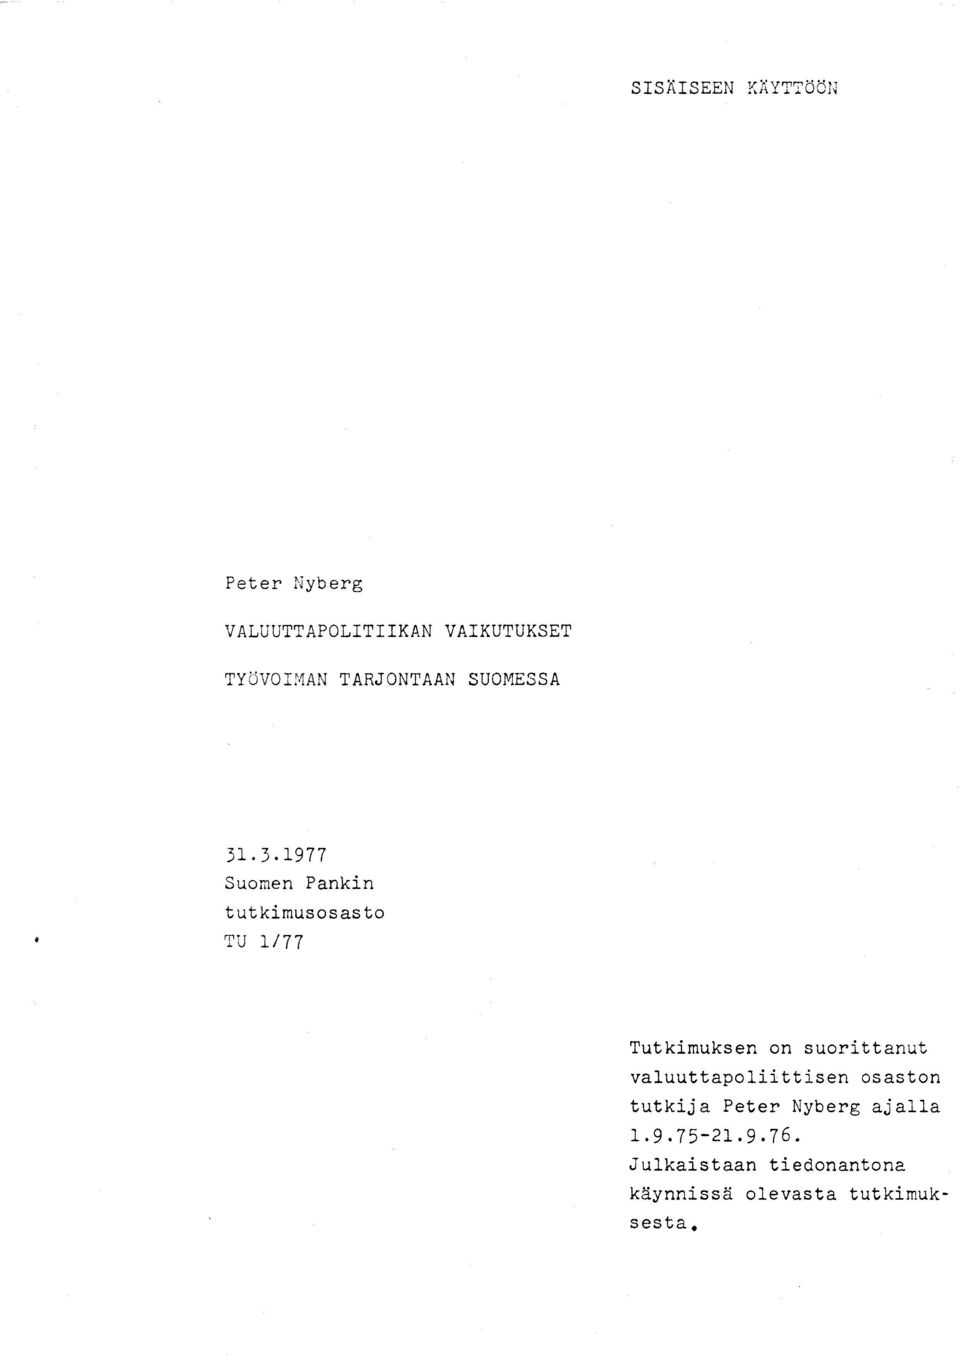 . 3.1977 Suomen Pankin tutkimusosasto TU 1/77 Tutkimuksen on suorittanut